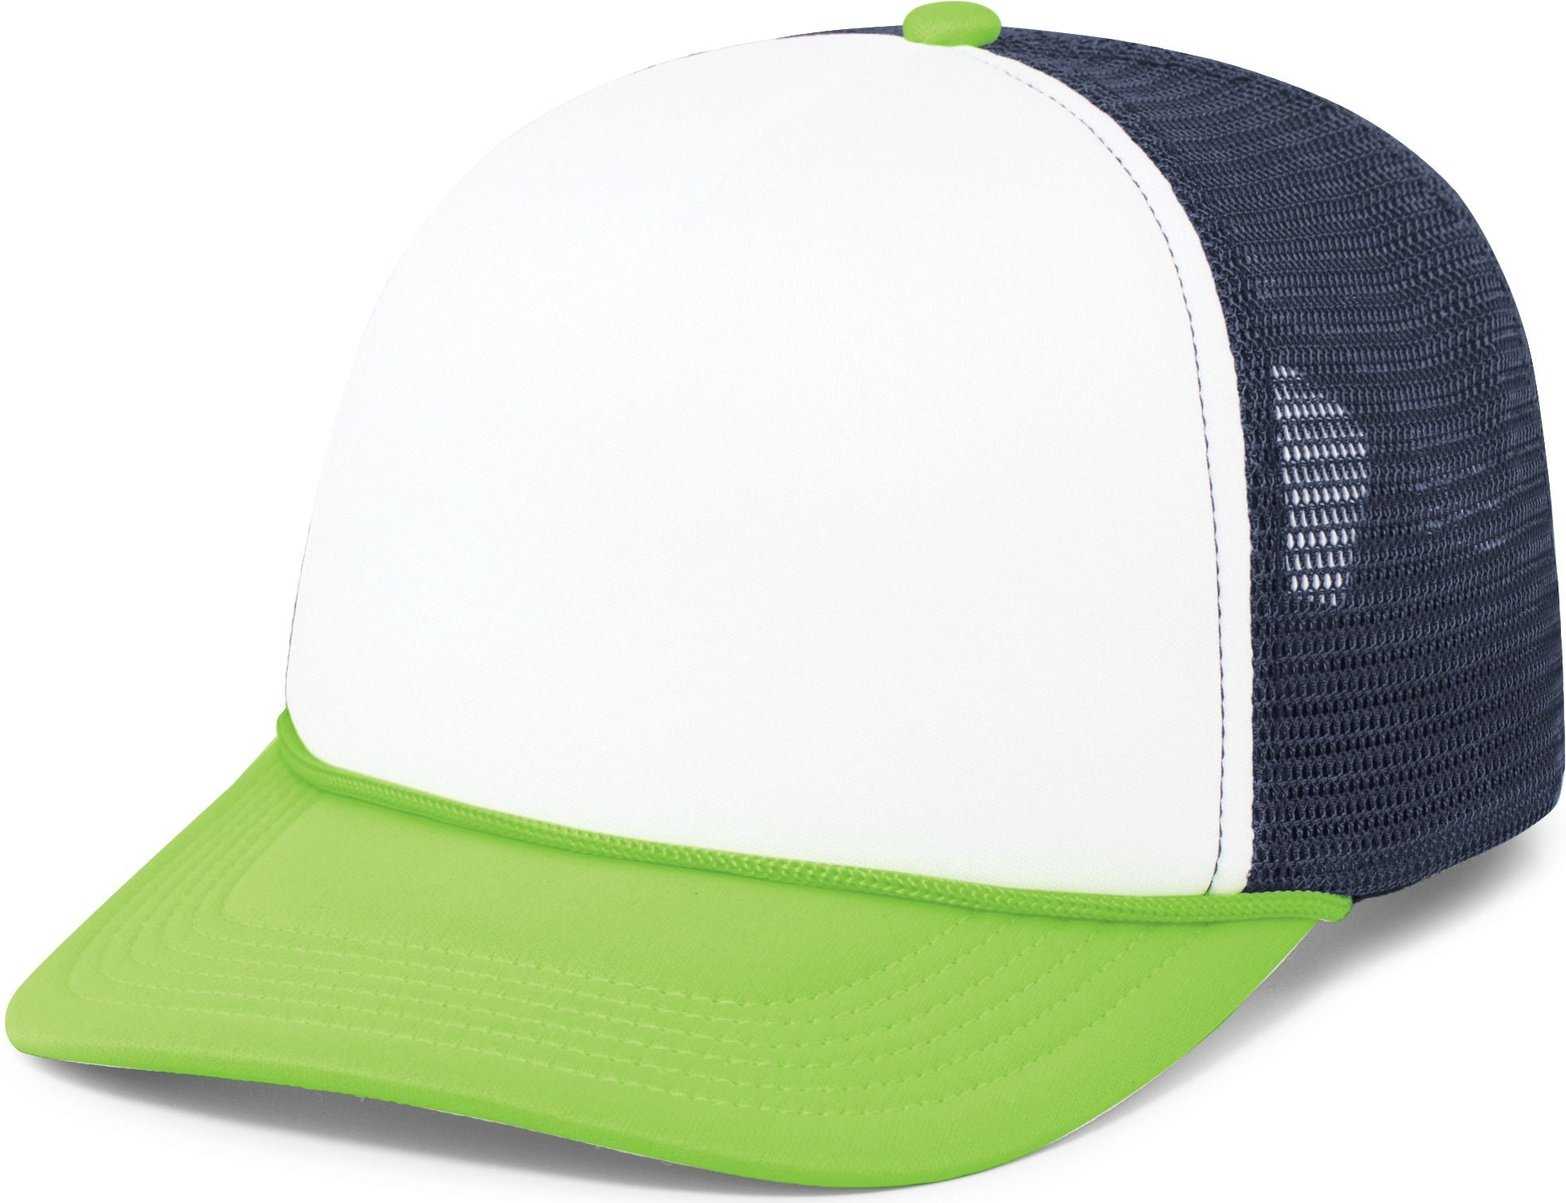 Pacific Headwear P782 Foamie Fresh Trucker Cap - White Navy Neon Green - HIT a Double